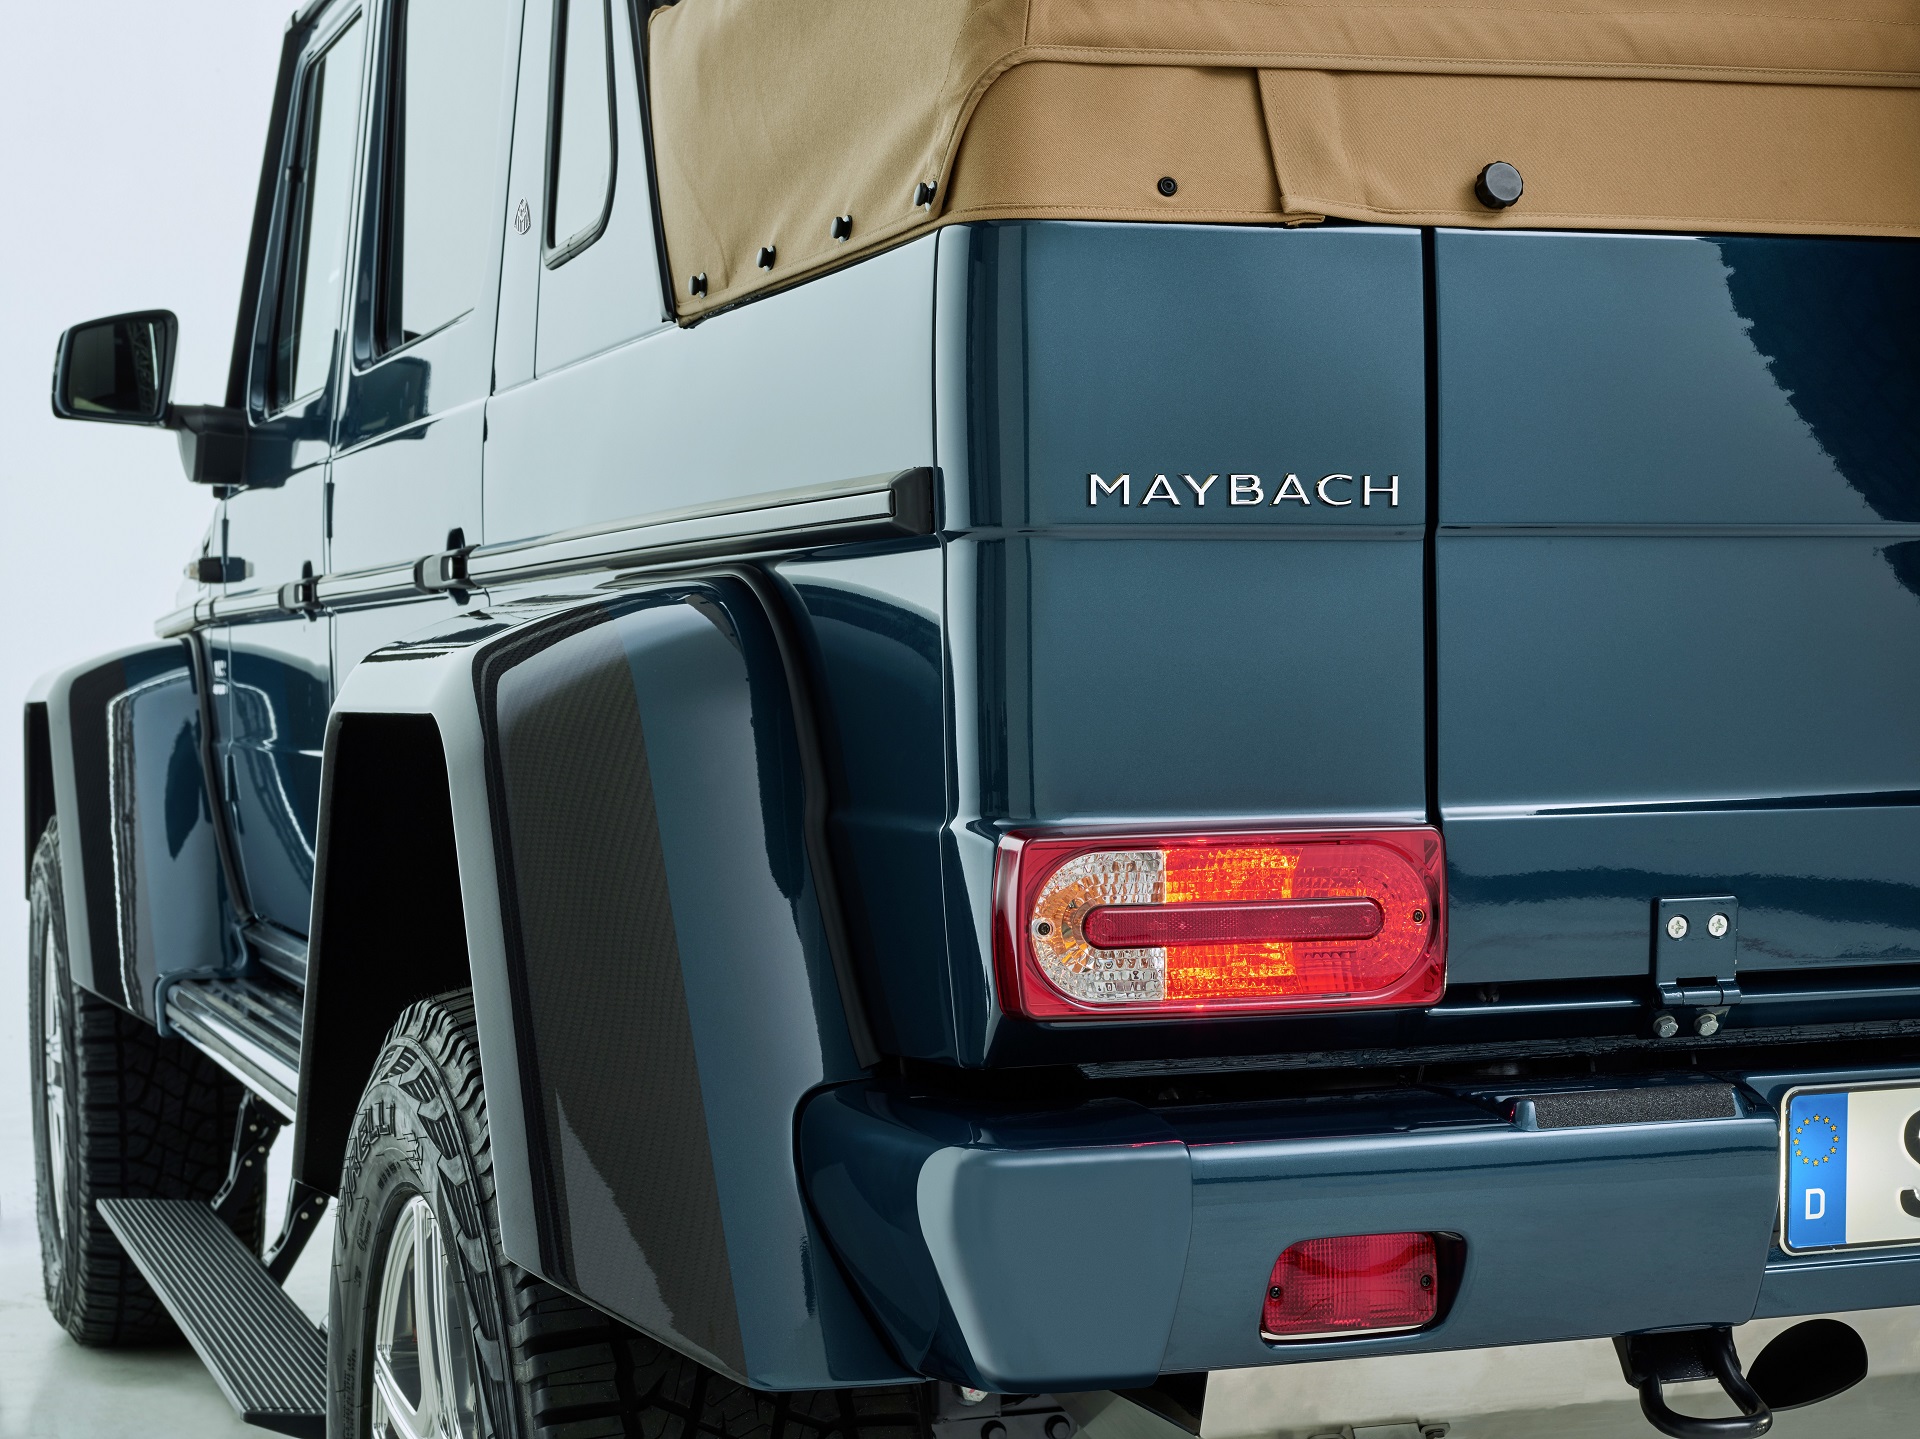 Mercedes-Maybach G 650 Landaulet ;*Kraftstoffverbrauch kombiniert: 17,0 l/100 km, CO2-Emissionen kombiniert: 397 g/km Mercedes-Maybach G 650 Landaulet; *Fuel consumption combined: 17.0 l/100 km, CO2 emissions combined: 397 g/km